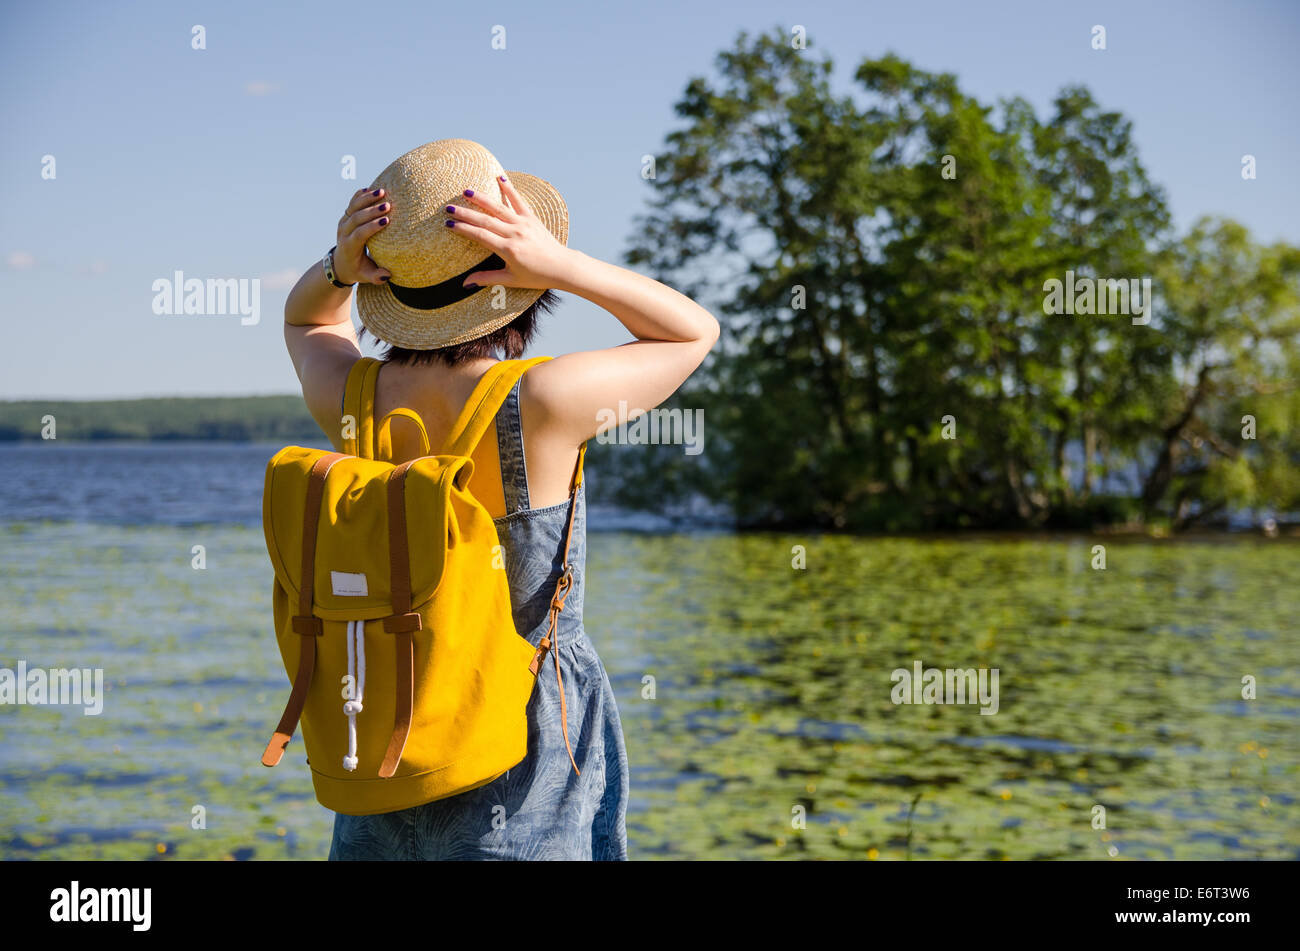 Une jeune femme avec un sac à dos jaune tenant son chapeau devant un lac et  arbres en été Photo Stock - Alamy